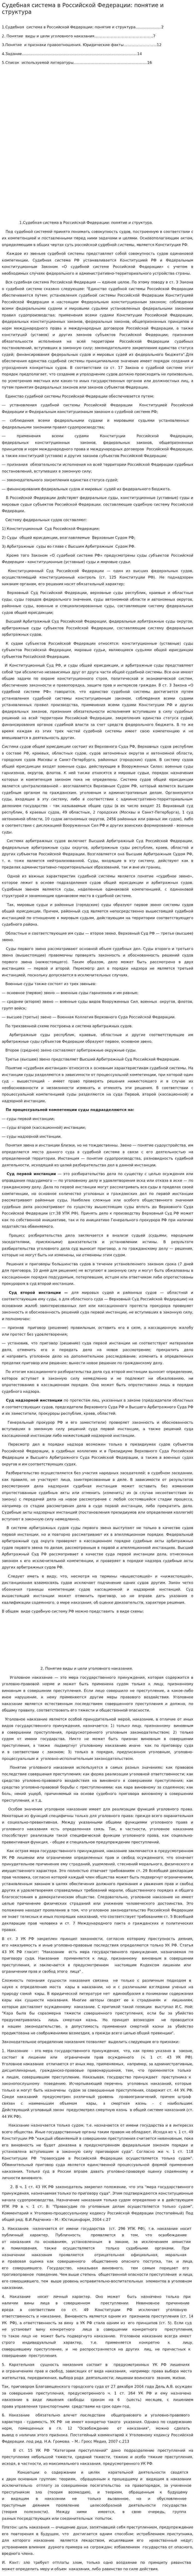 Судебная система в Российской Федерации: понятие и структура